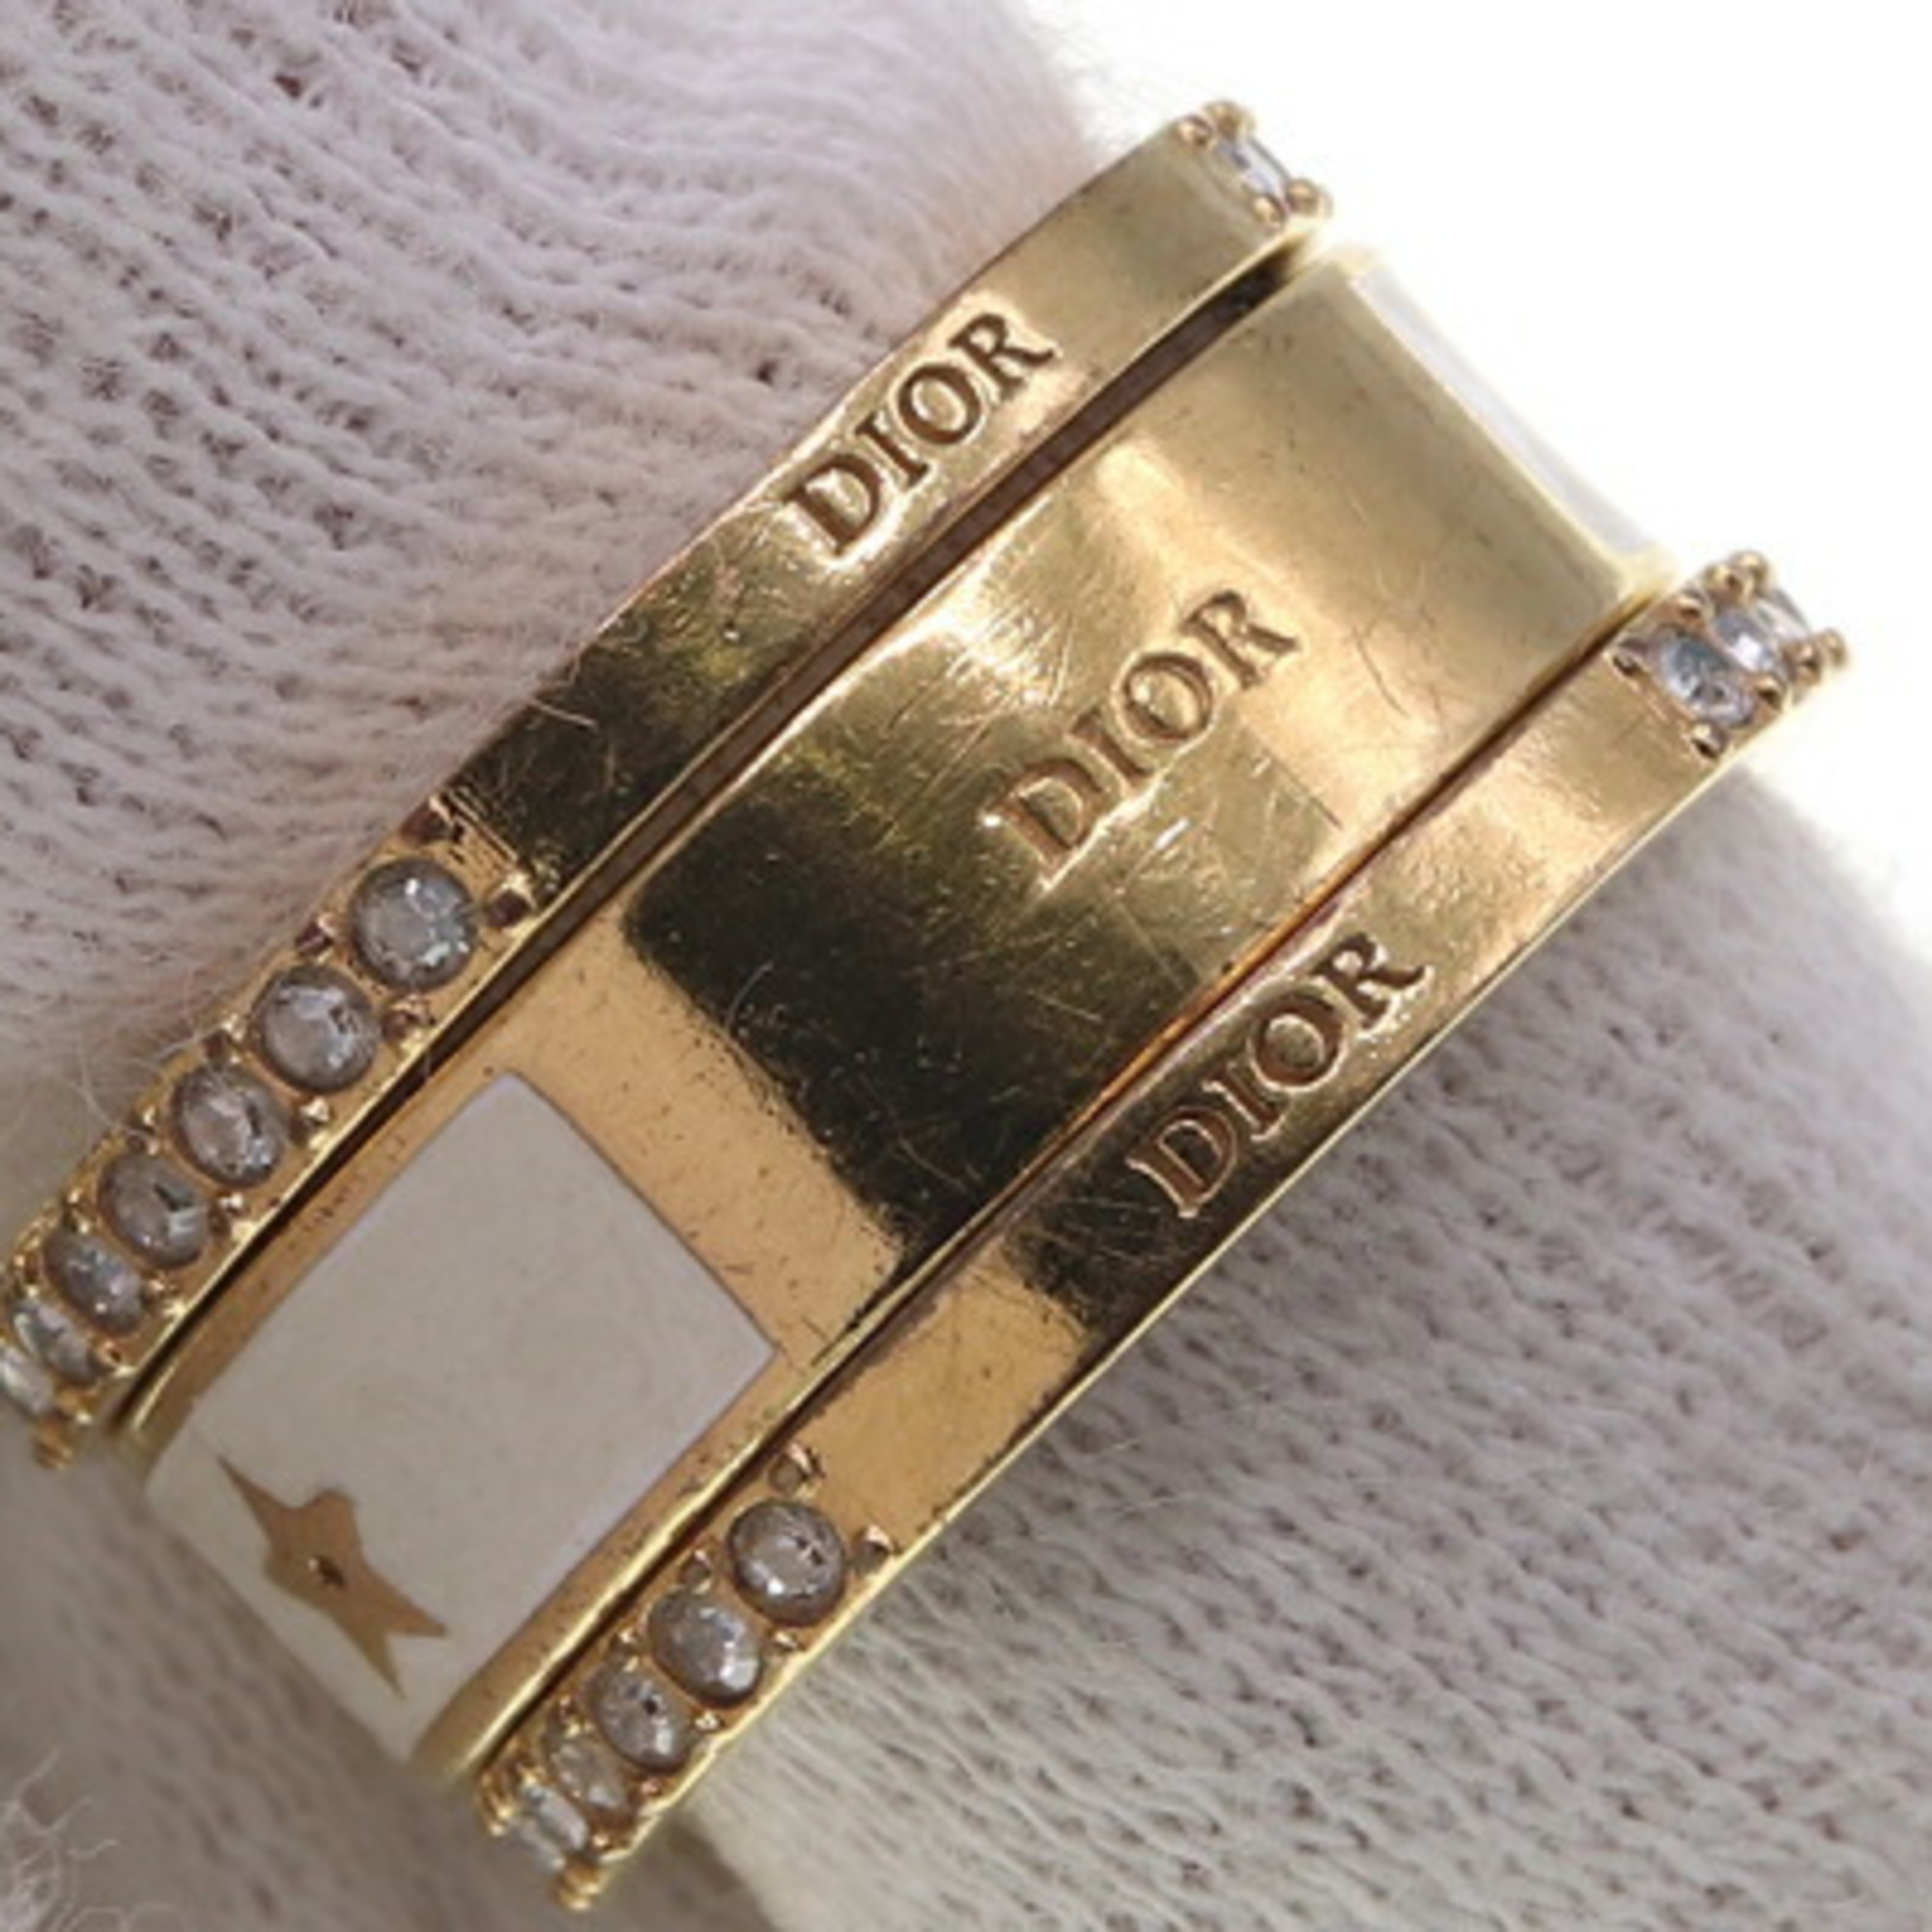 Christian Dior Dior Ring Cord R1256ODETTELQ White Gold 3 Set Stone Women's Christian